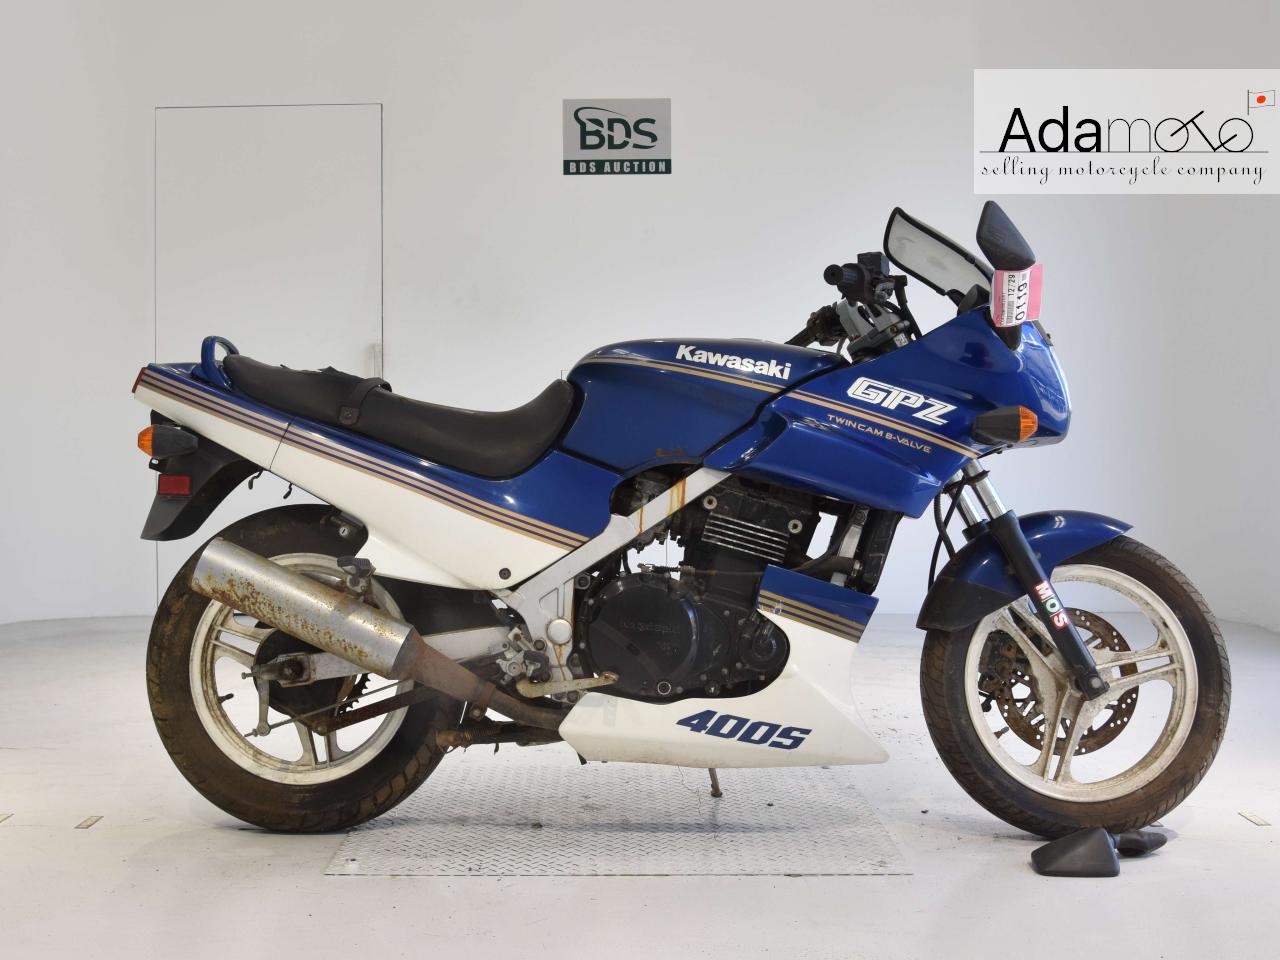 Kawasaki GPZ400S - Adamoto - Motorcycles from Japan